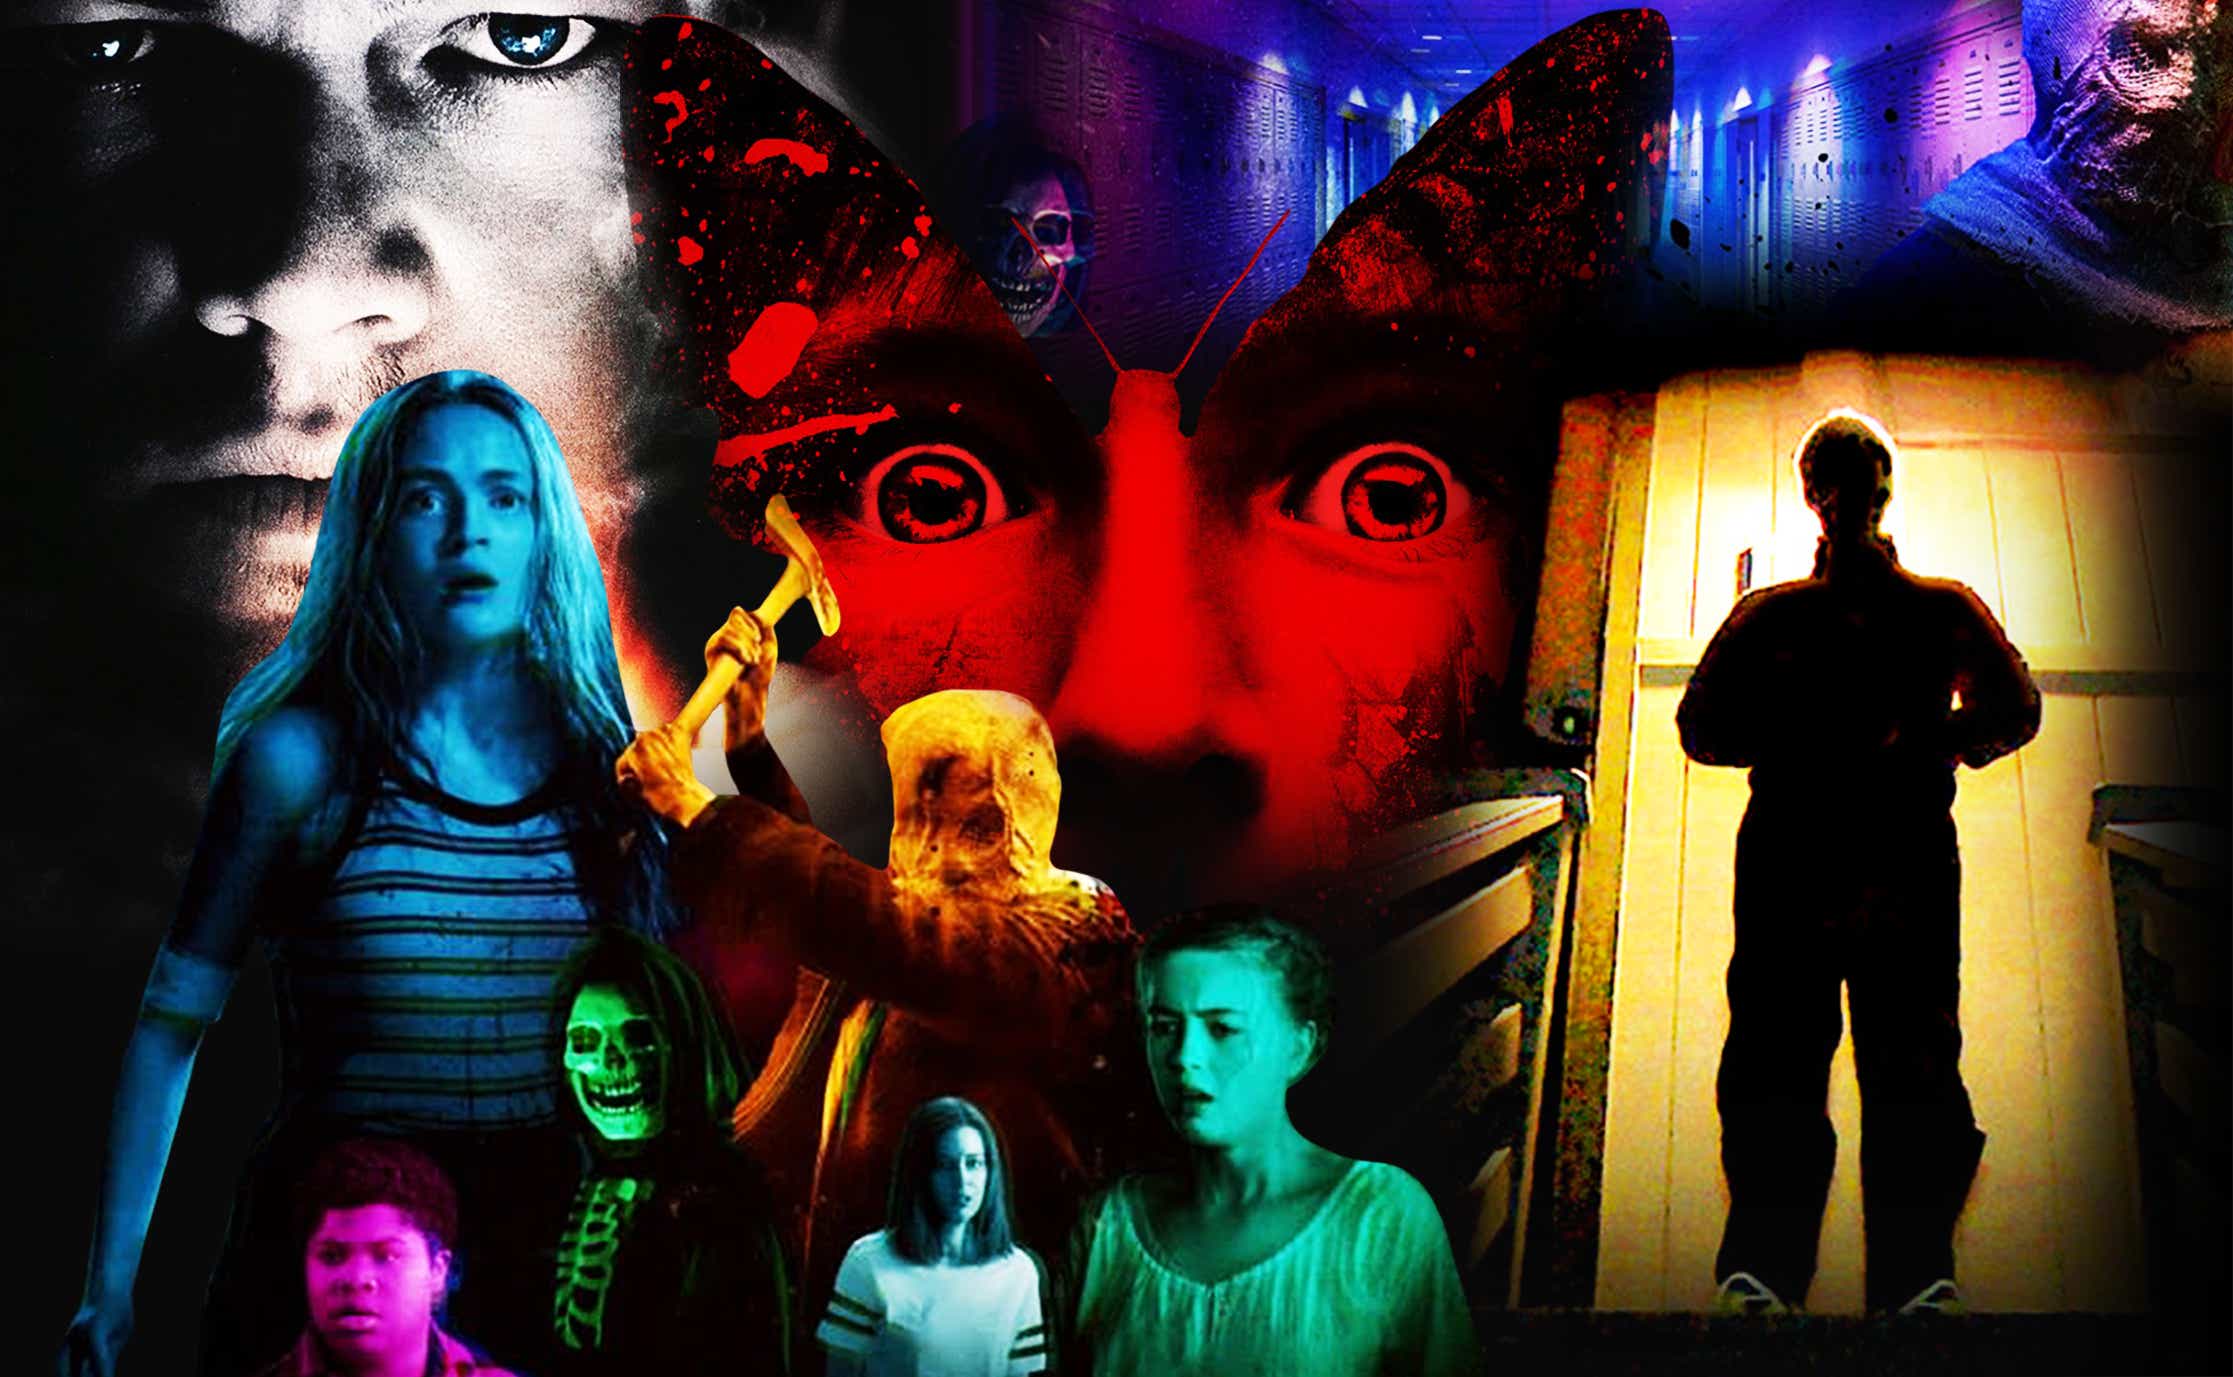 Best horror movies on Netflix